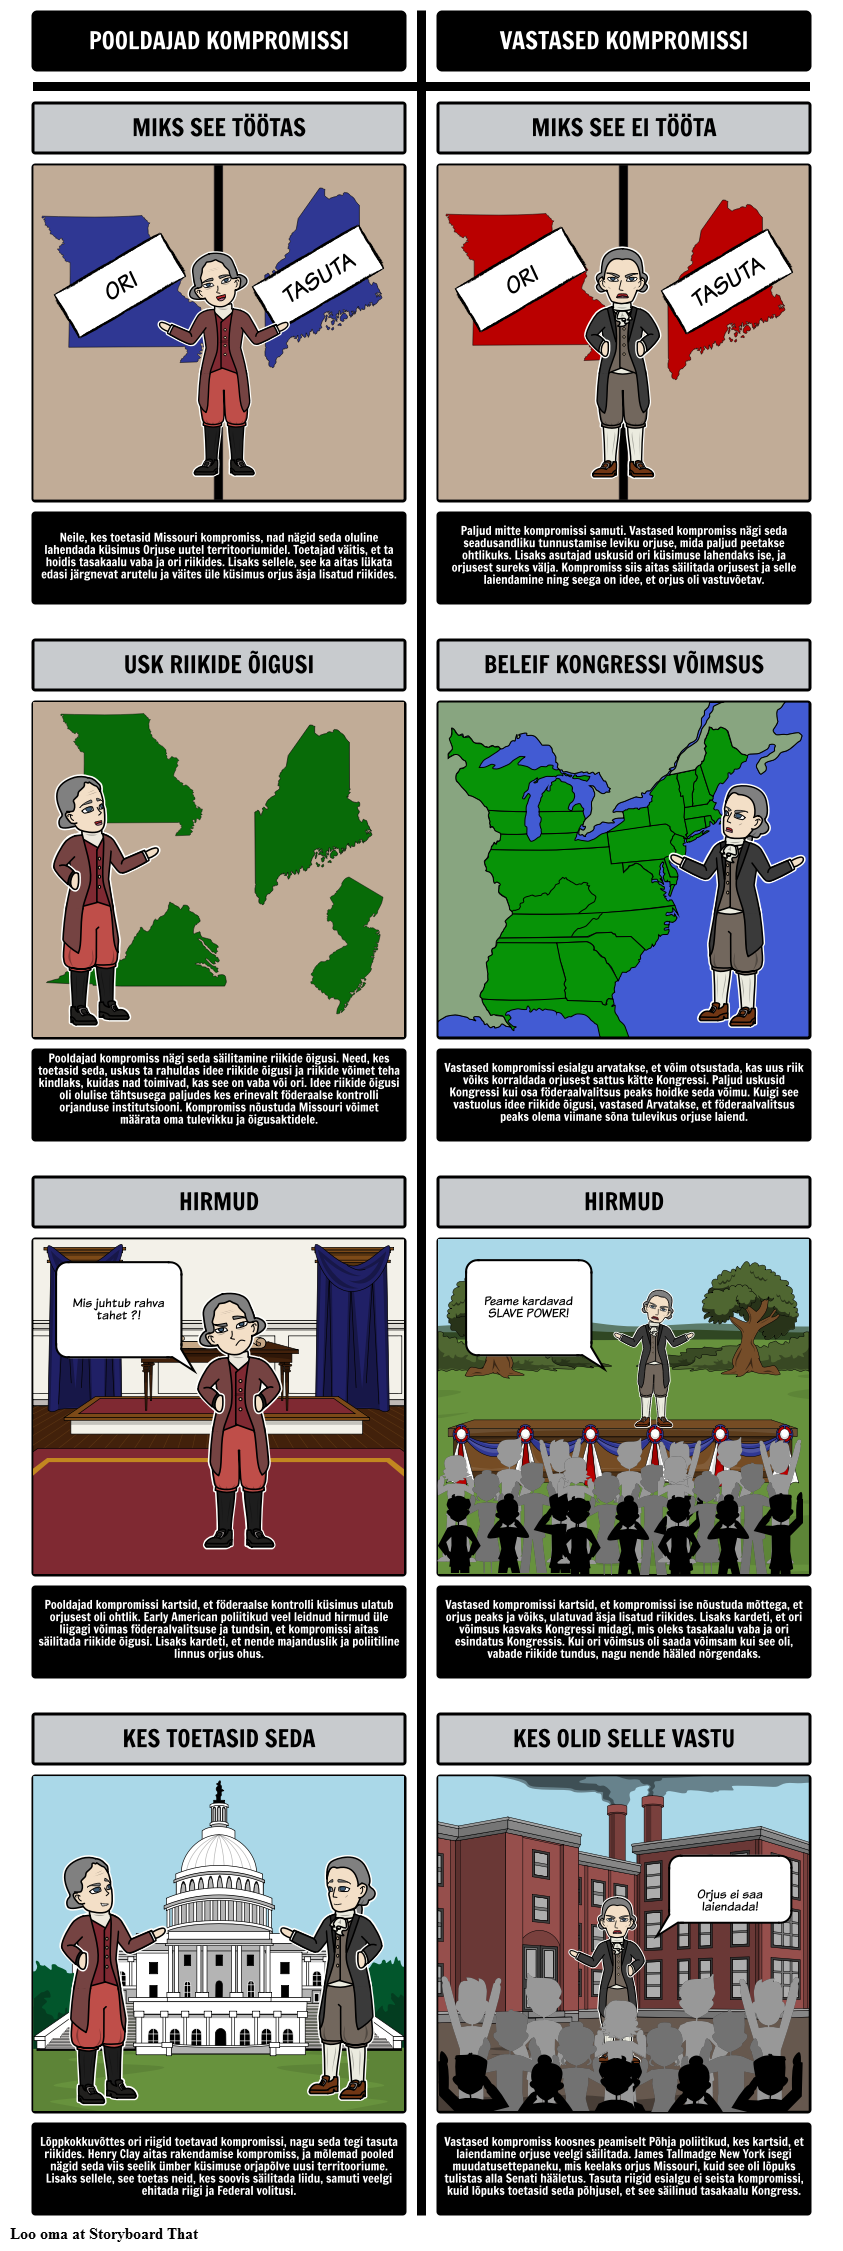 Missouri kompromiss 1820 - pooldajate ja vastaste